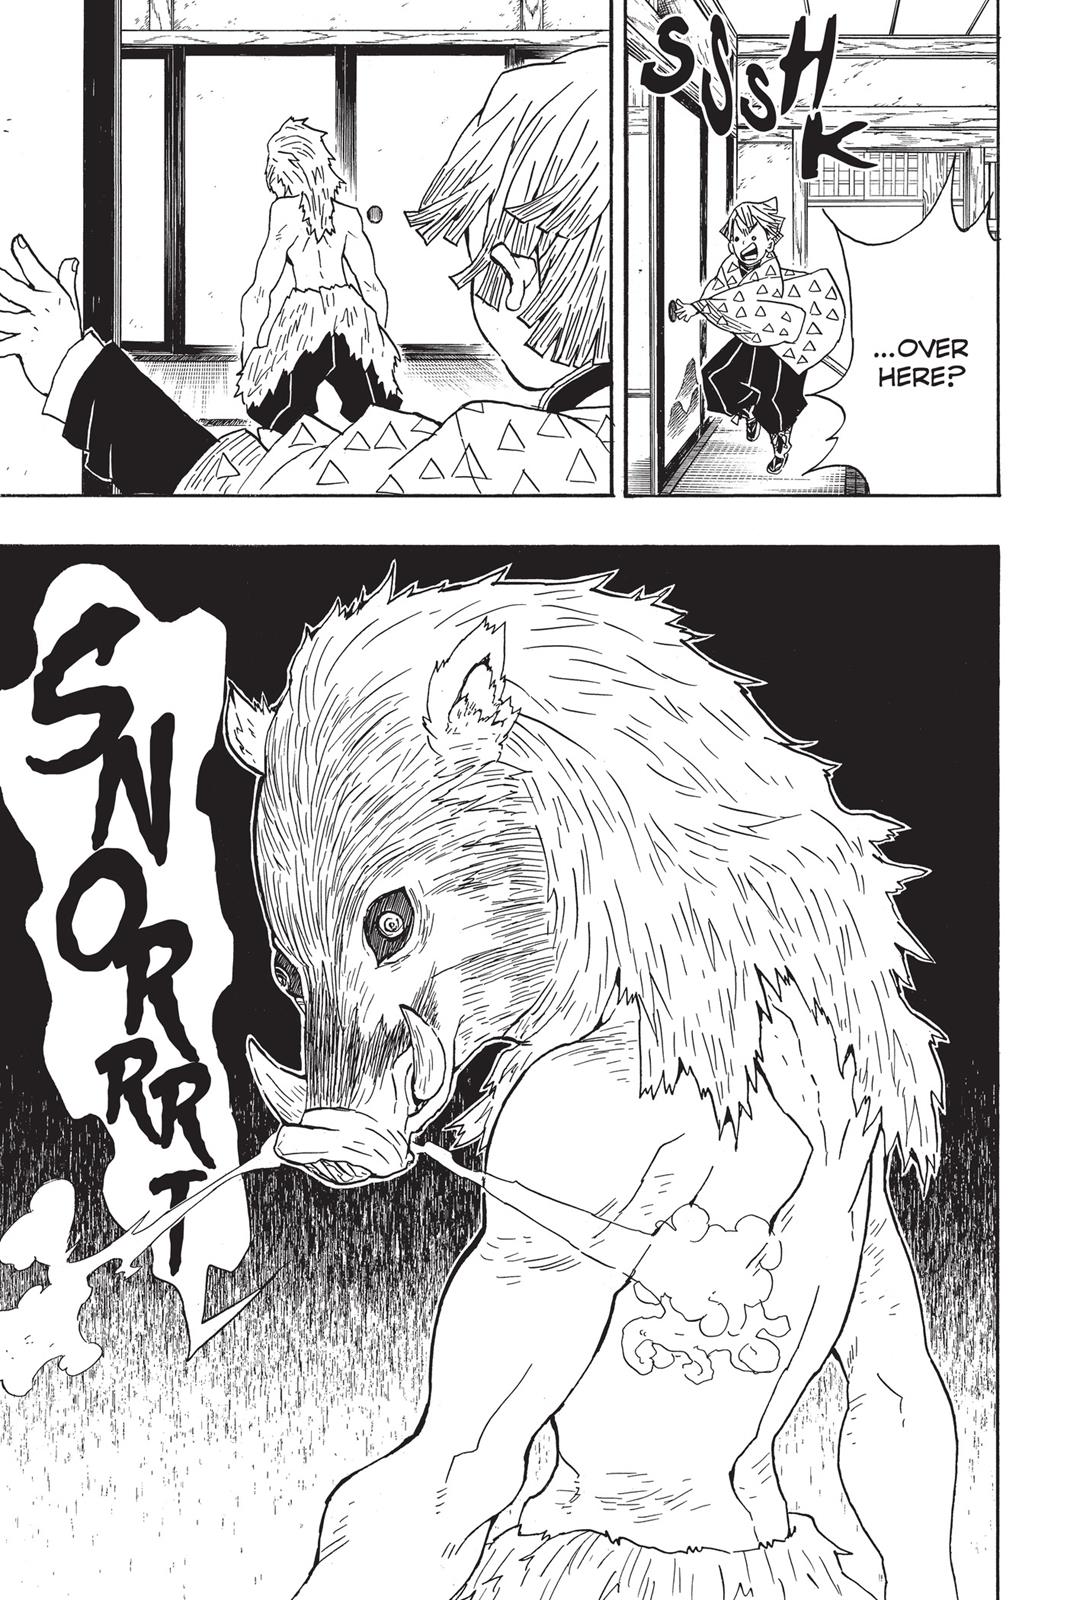 Demon Slayer Manga Manga Chapter - 21 - image 6